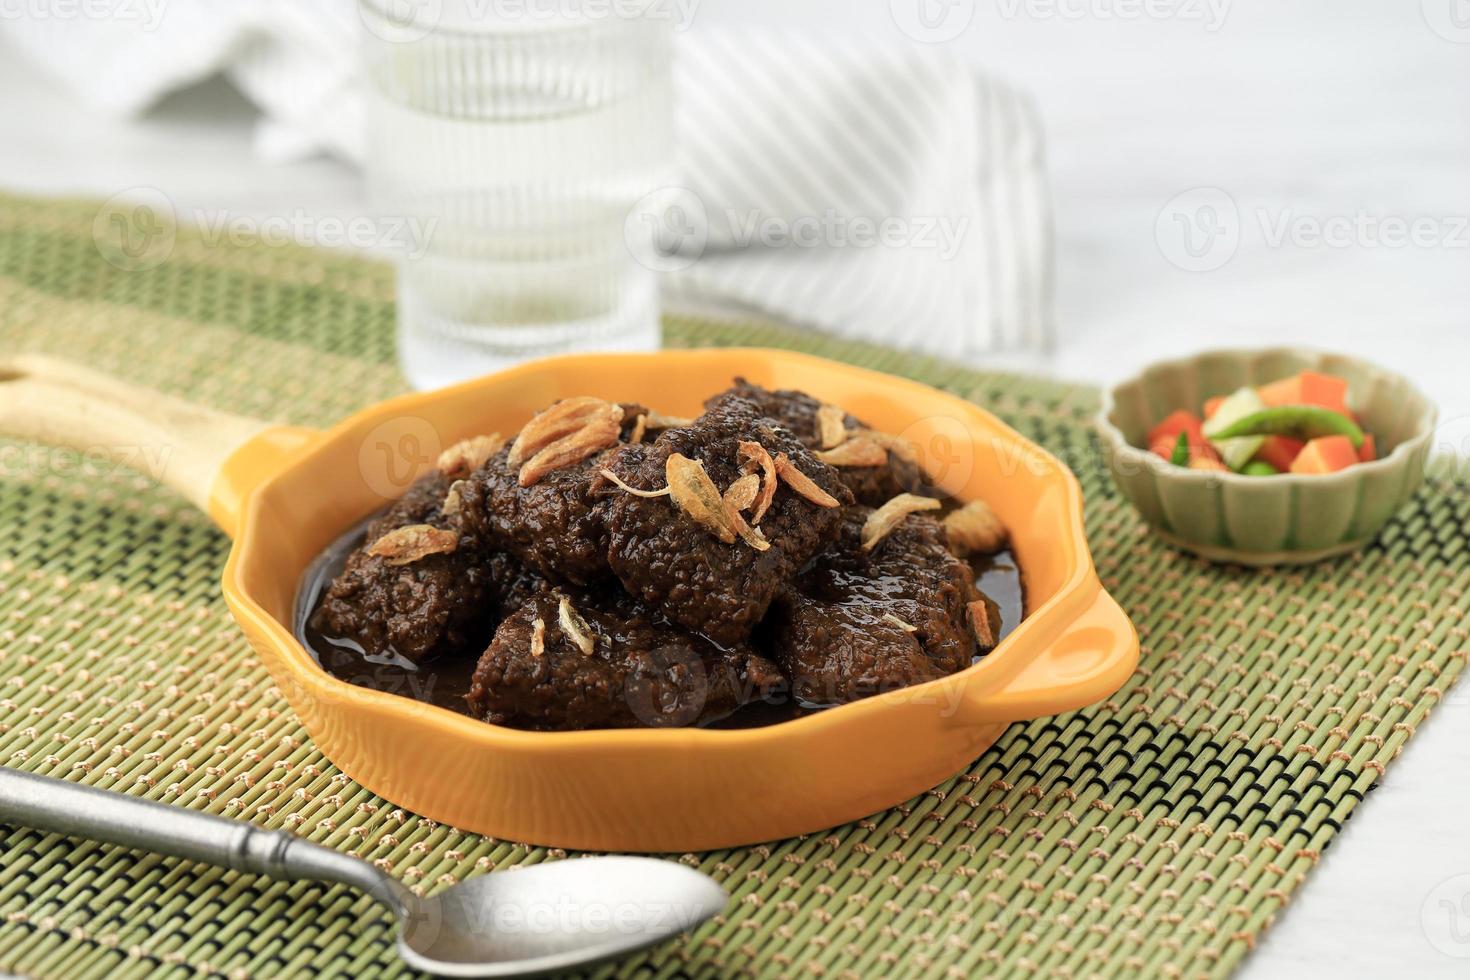 daging hitam palembang of zwart vlees malbi, jambi en palembang authentiek recept eten. stoofvlees met zoete sojasaus foto